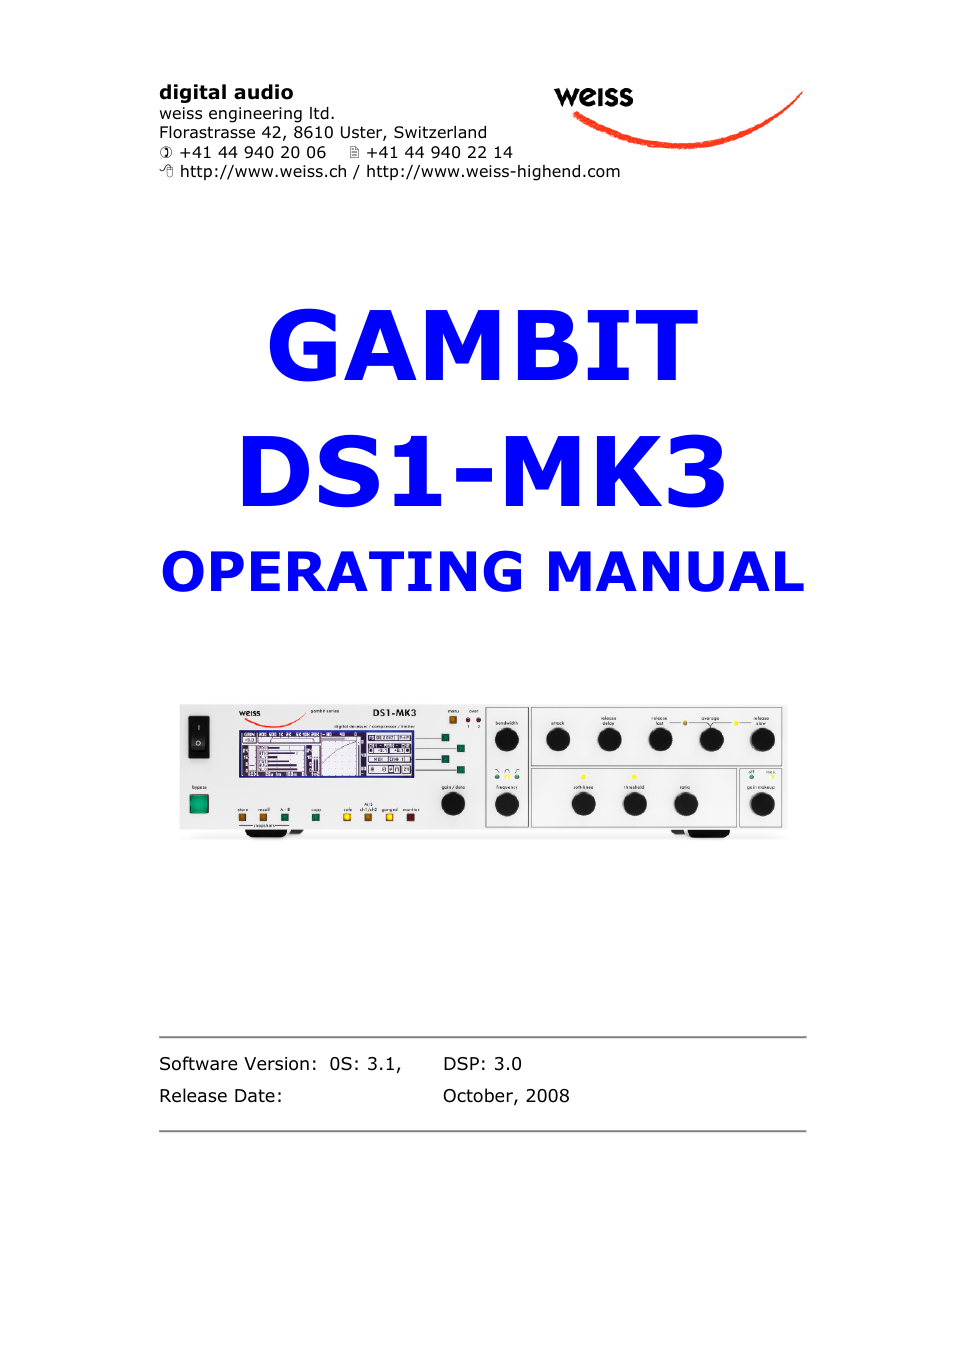 GAMBIT DS1-MK3